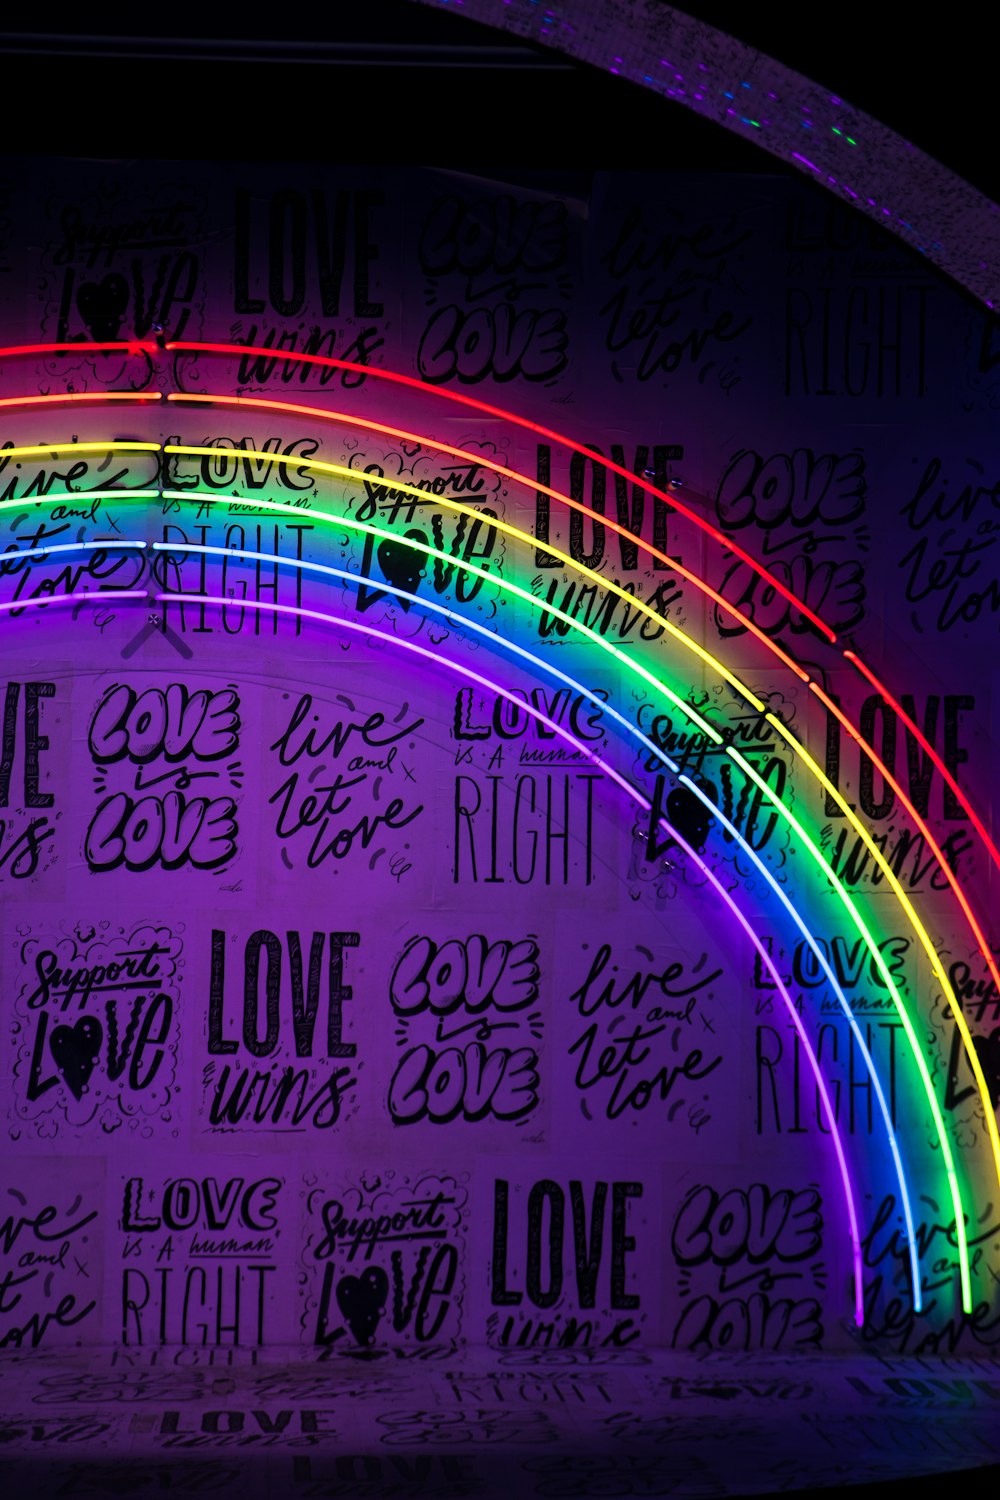 Más de 500 imágenes de fondos de pantalla gay | Descargar imágenes gratis  en Unsplash